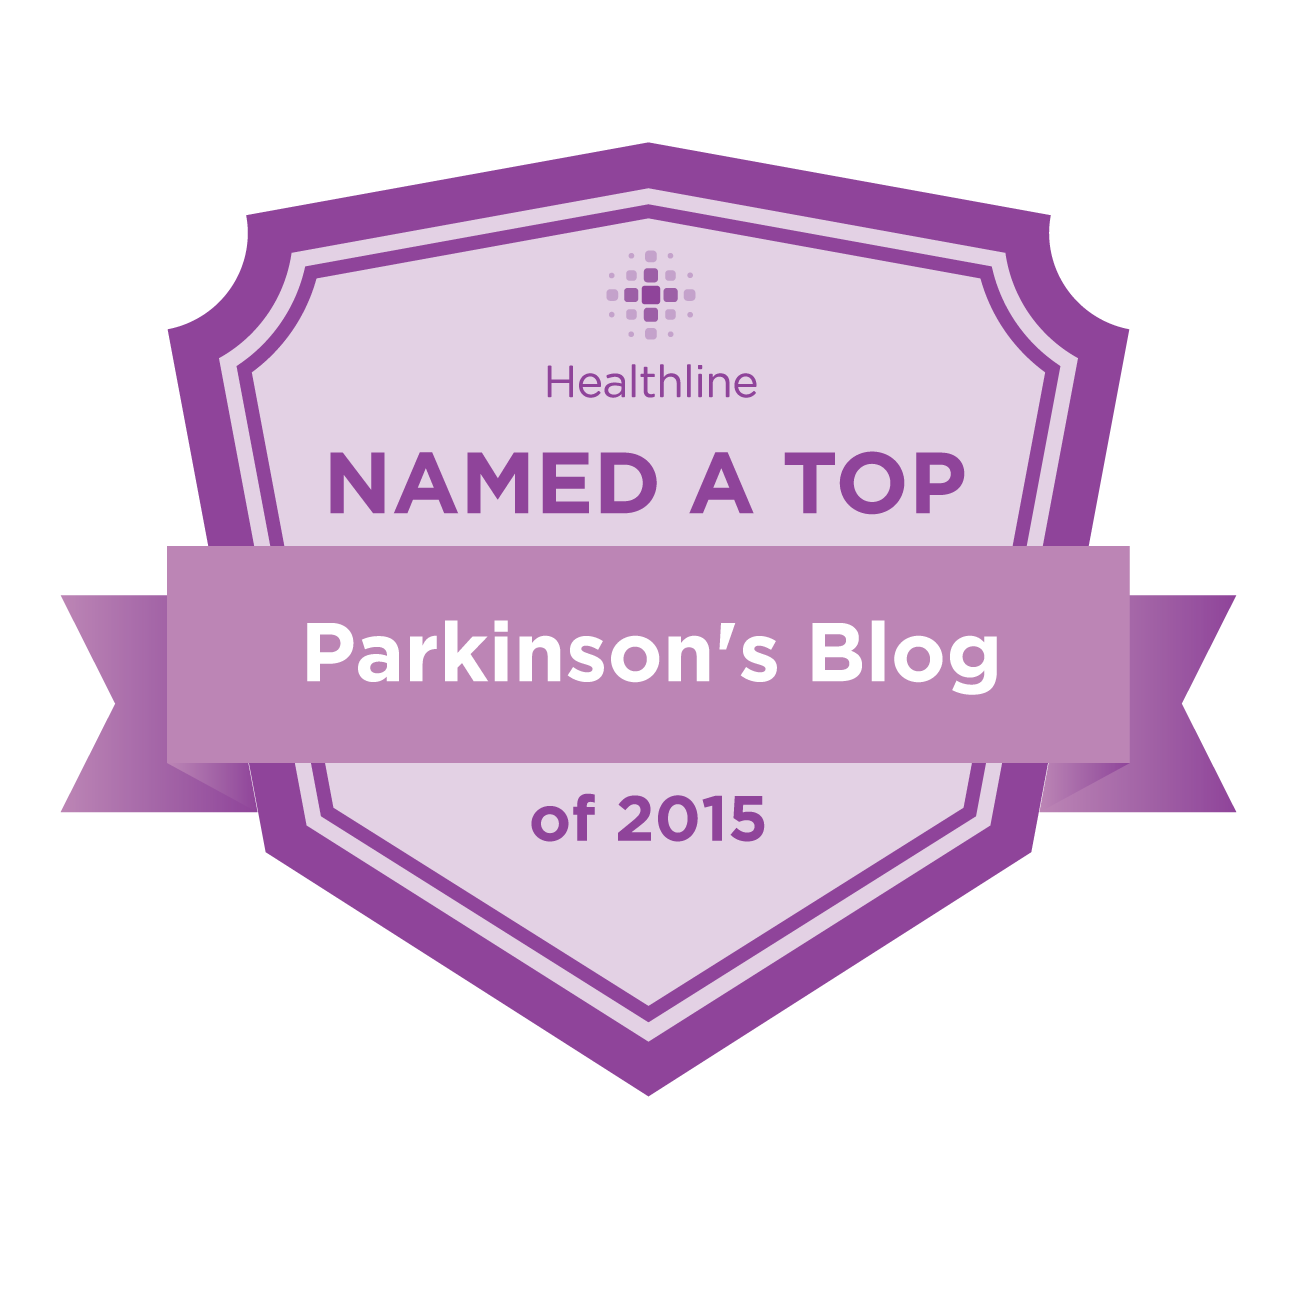 parkinsons best blogs badge